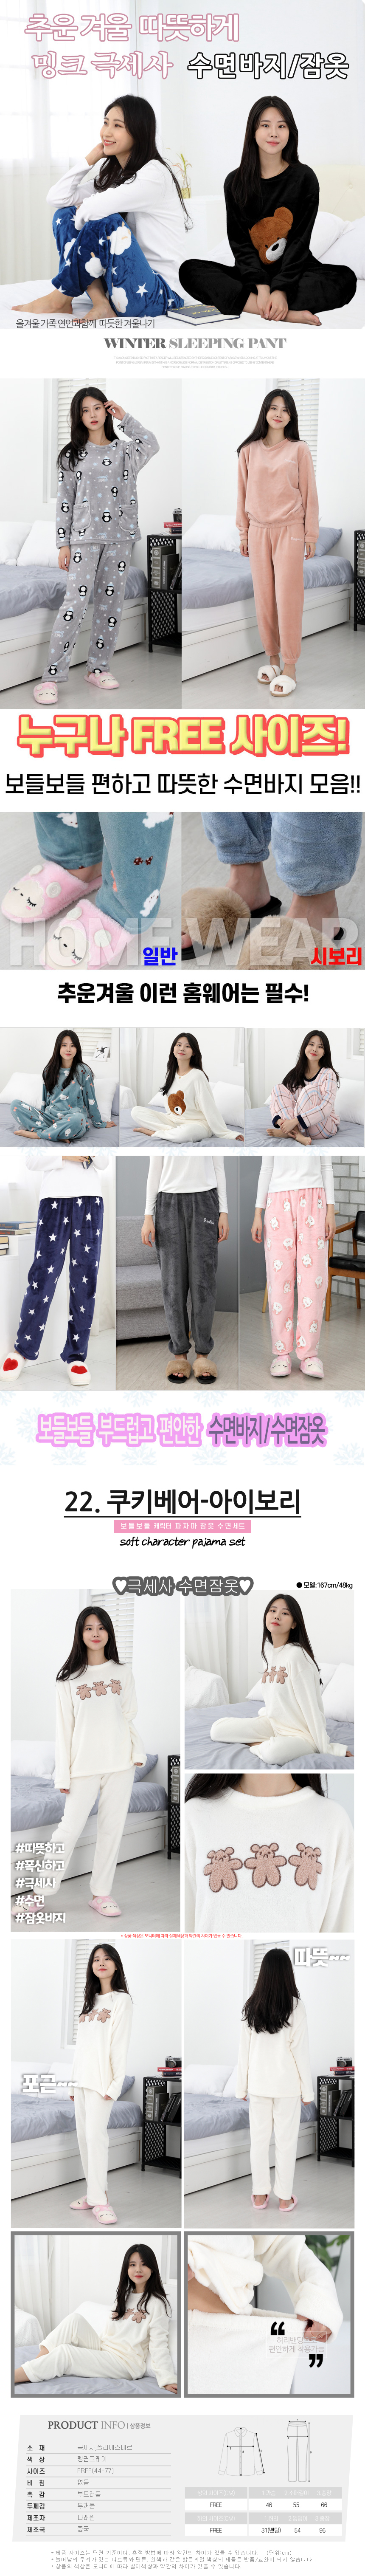 sleeping_pajamas_set_22.jpg